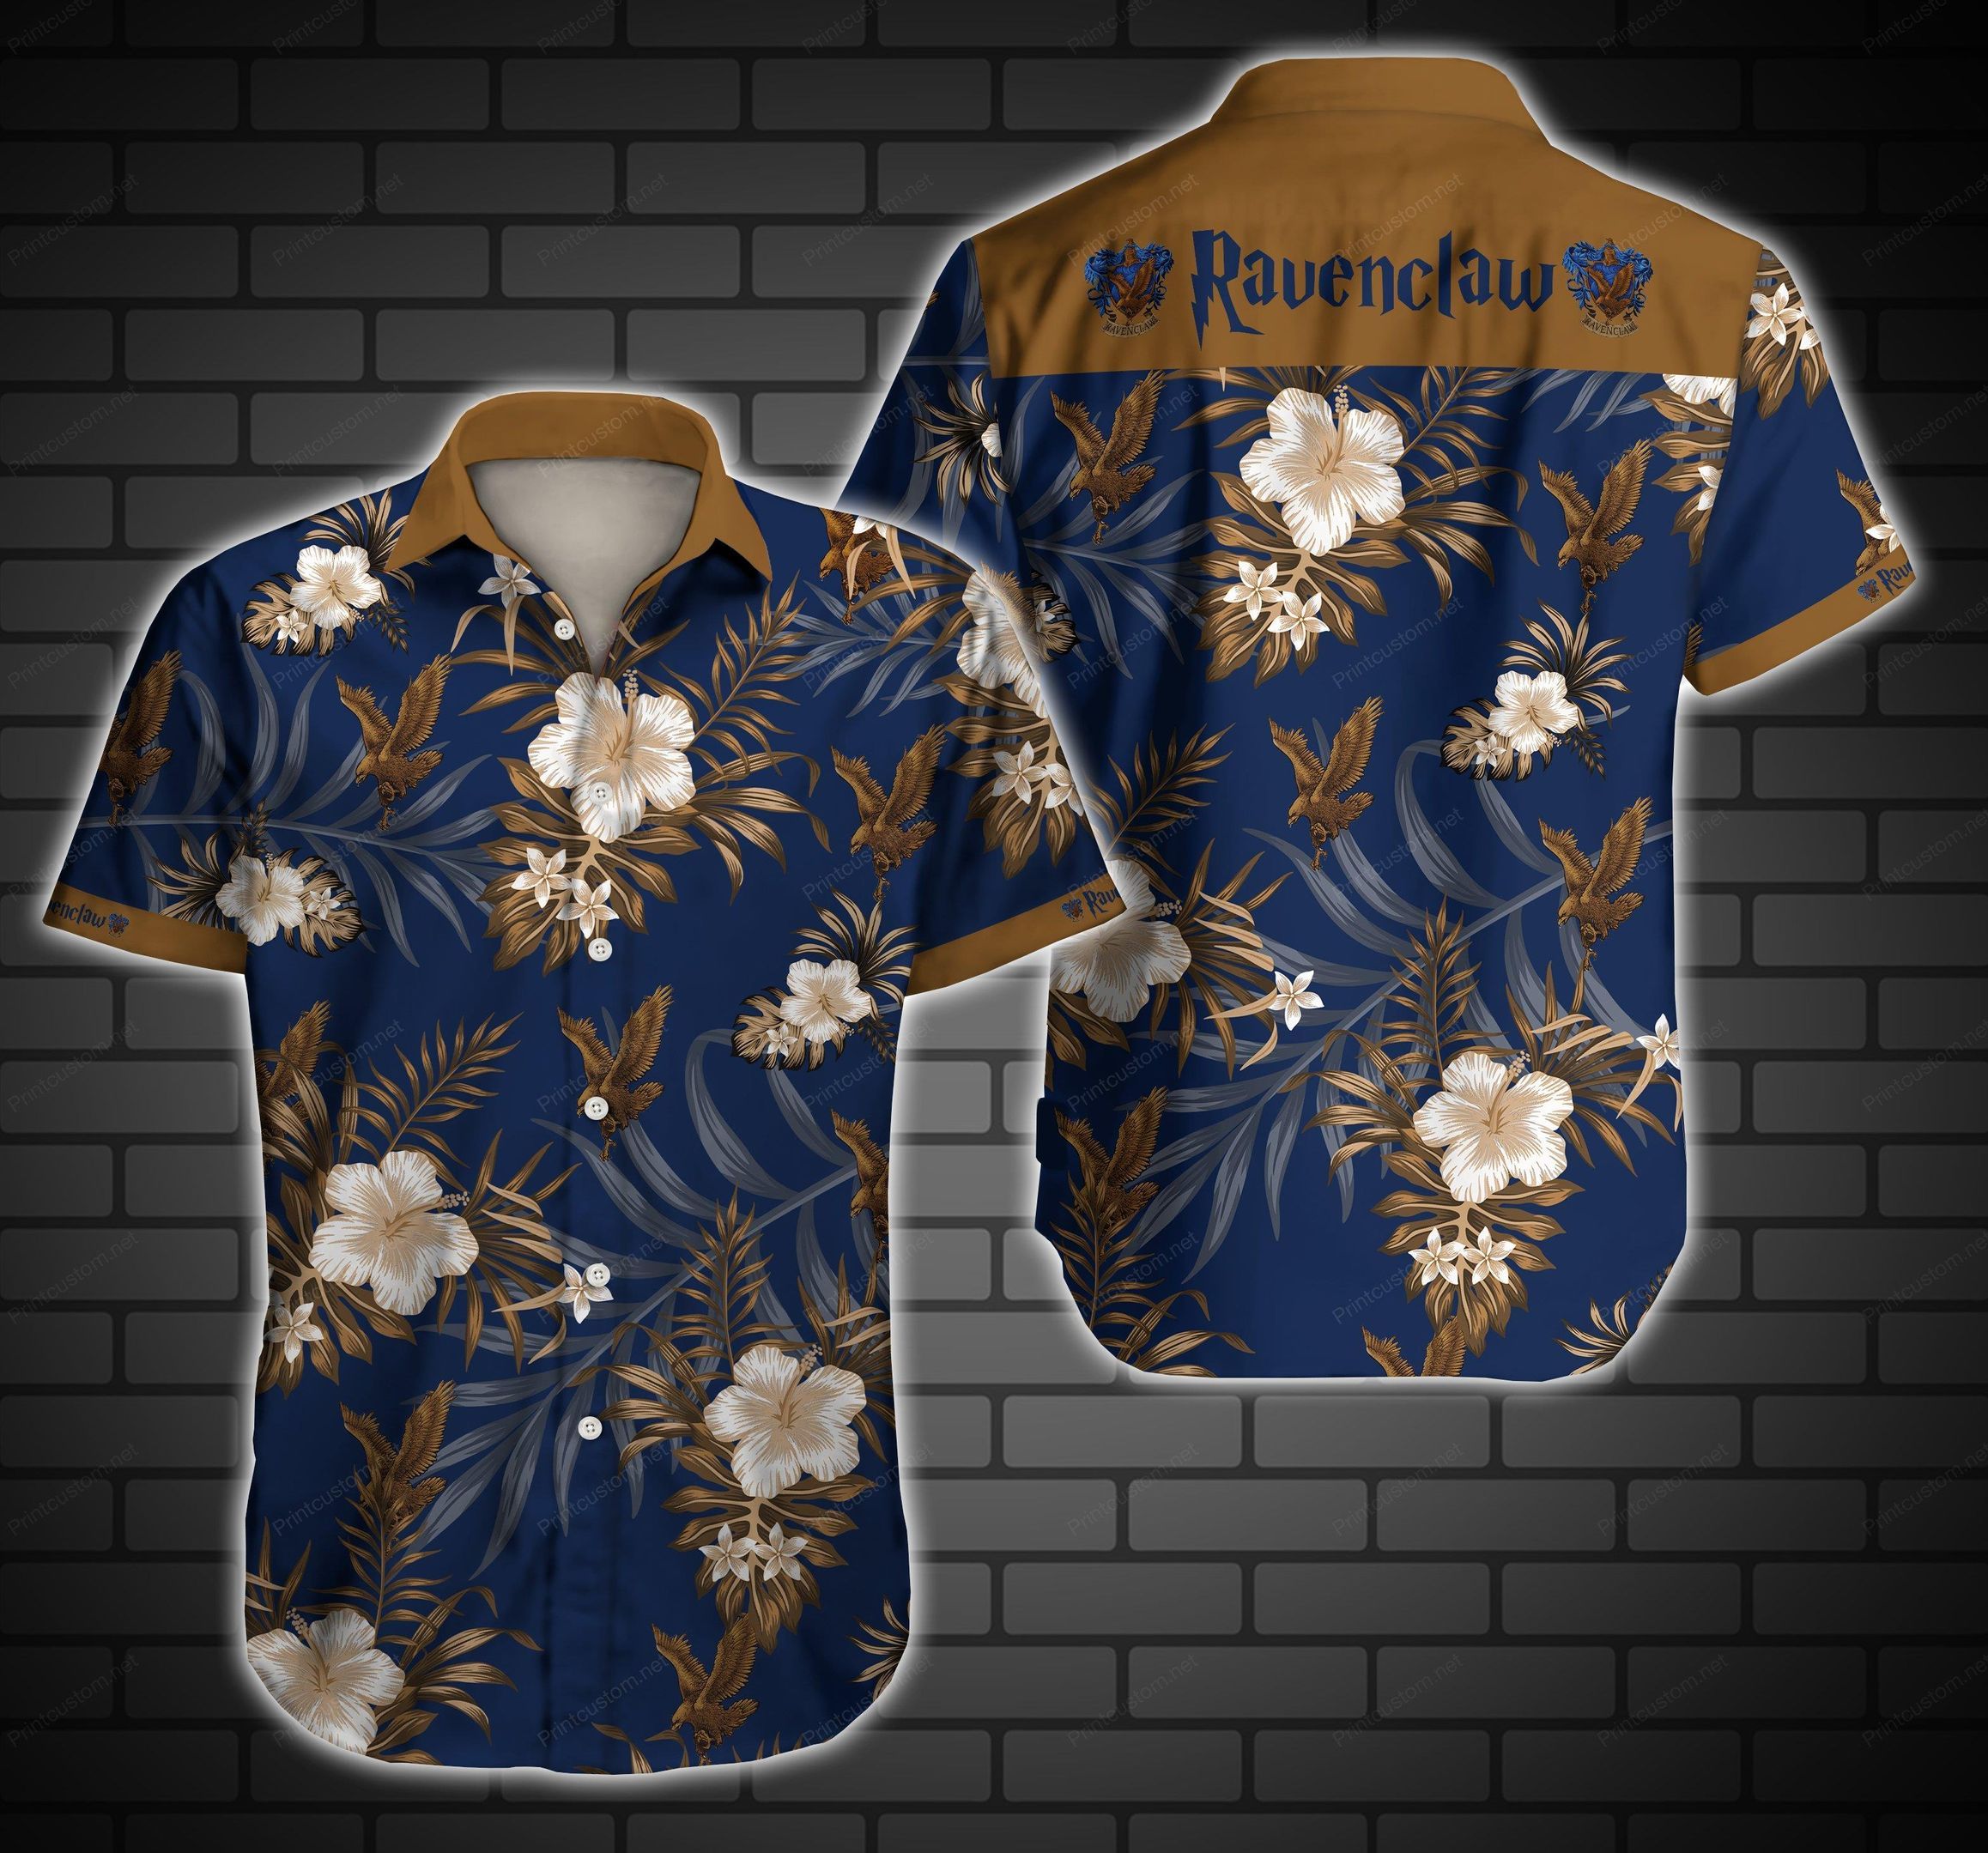 Ravenclaw Logo Hawaii Shirt Summer Button Up Shirt For Men Beach Wear Short Sleeve Hawaii Shirt